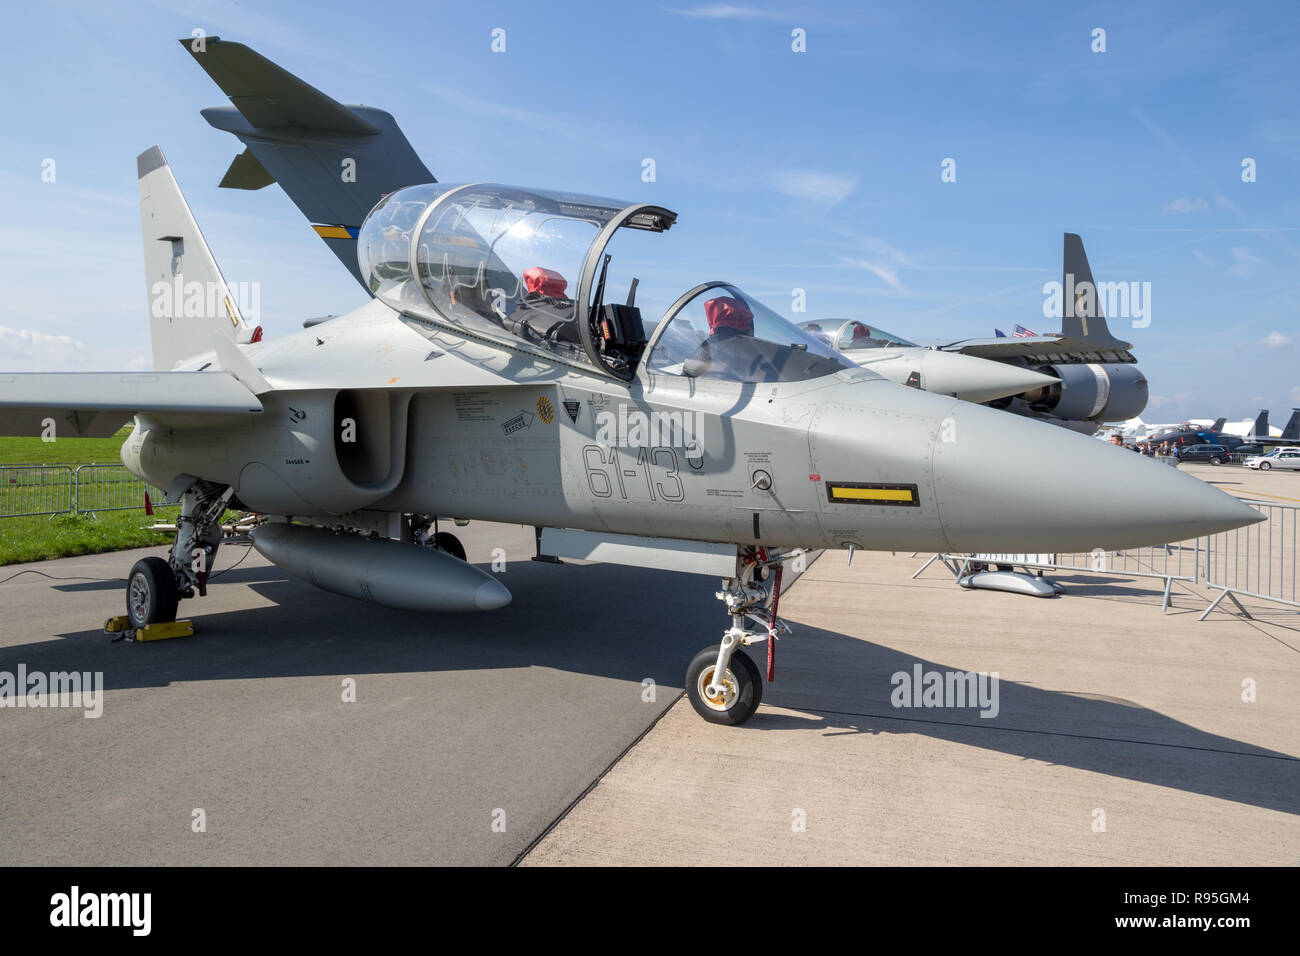 BERLIN, ALEMANIA - 27 abr, 2018: Alenia Aermacchi M-346 Master aviones de adiestramiento militar en la exhibición en el ILA Berlin Air Show. Foto de stock